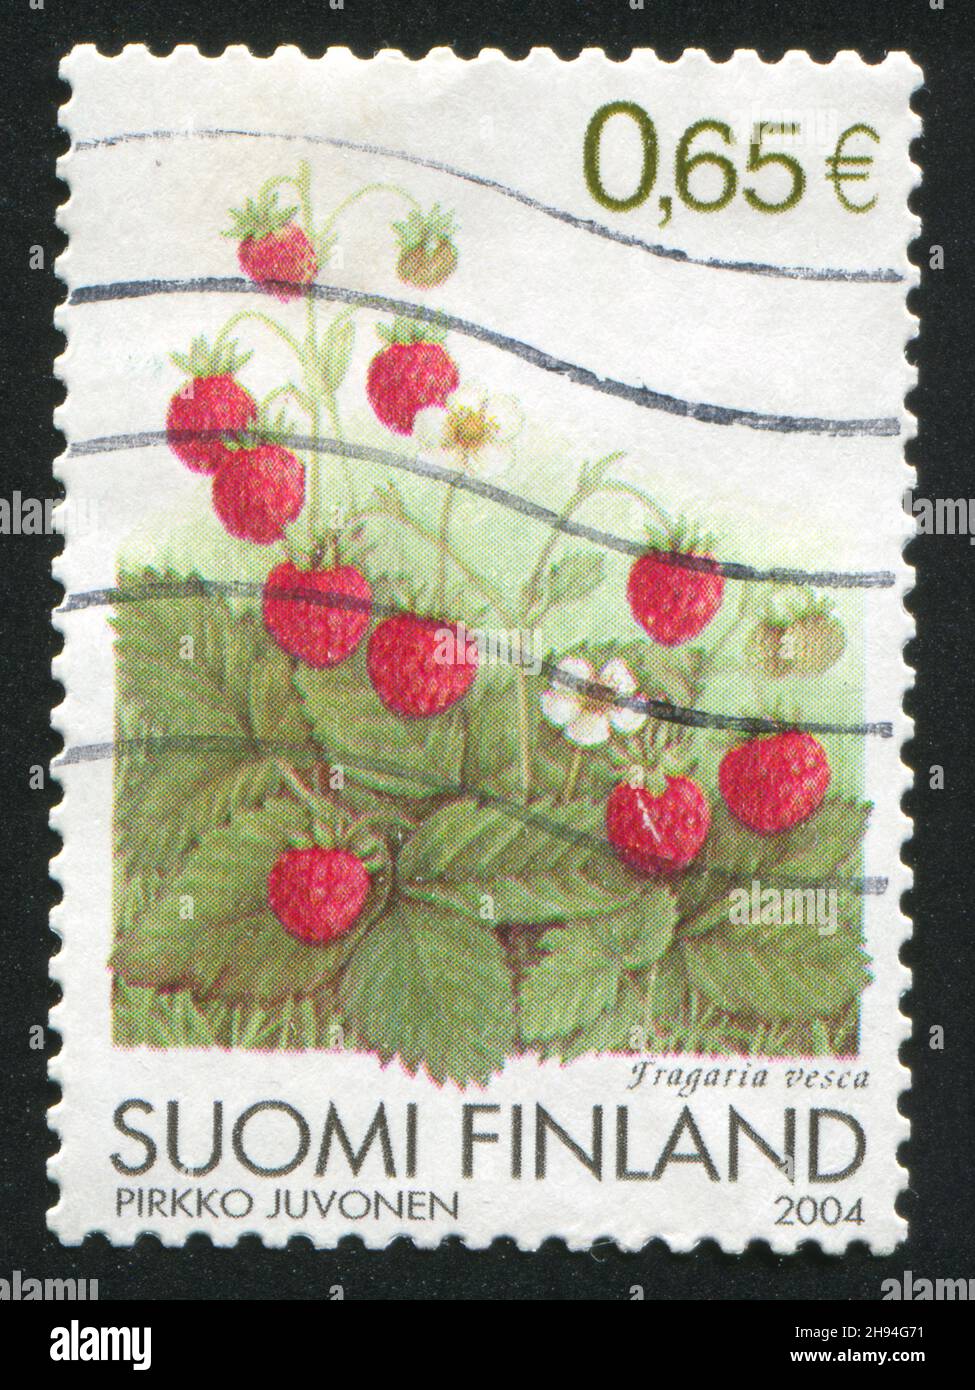 FINLANDE - VERS 2004: Timbre imprimé par la Finlande, montre des fraises sauvages, vers 2004 Banque D'Images